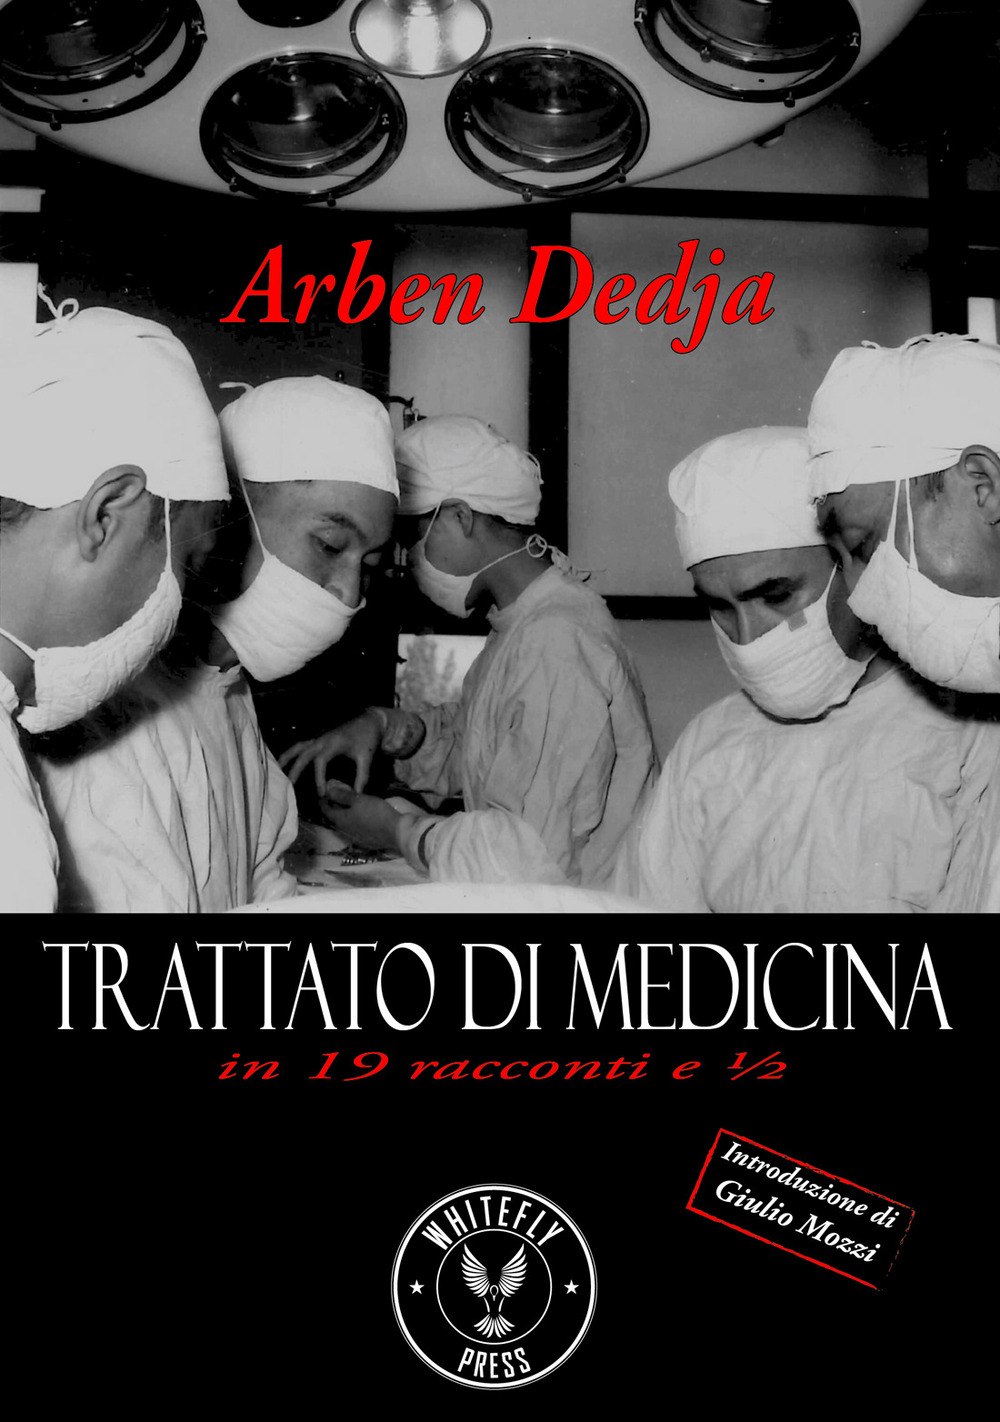 Image of Trattato di medicina in 19 racconti e ½